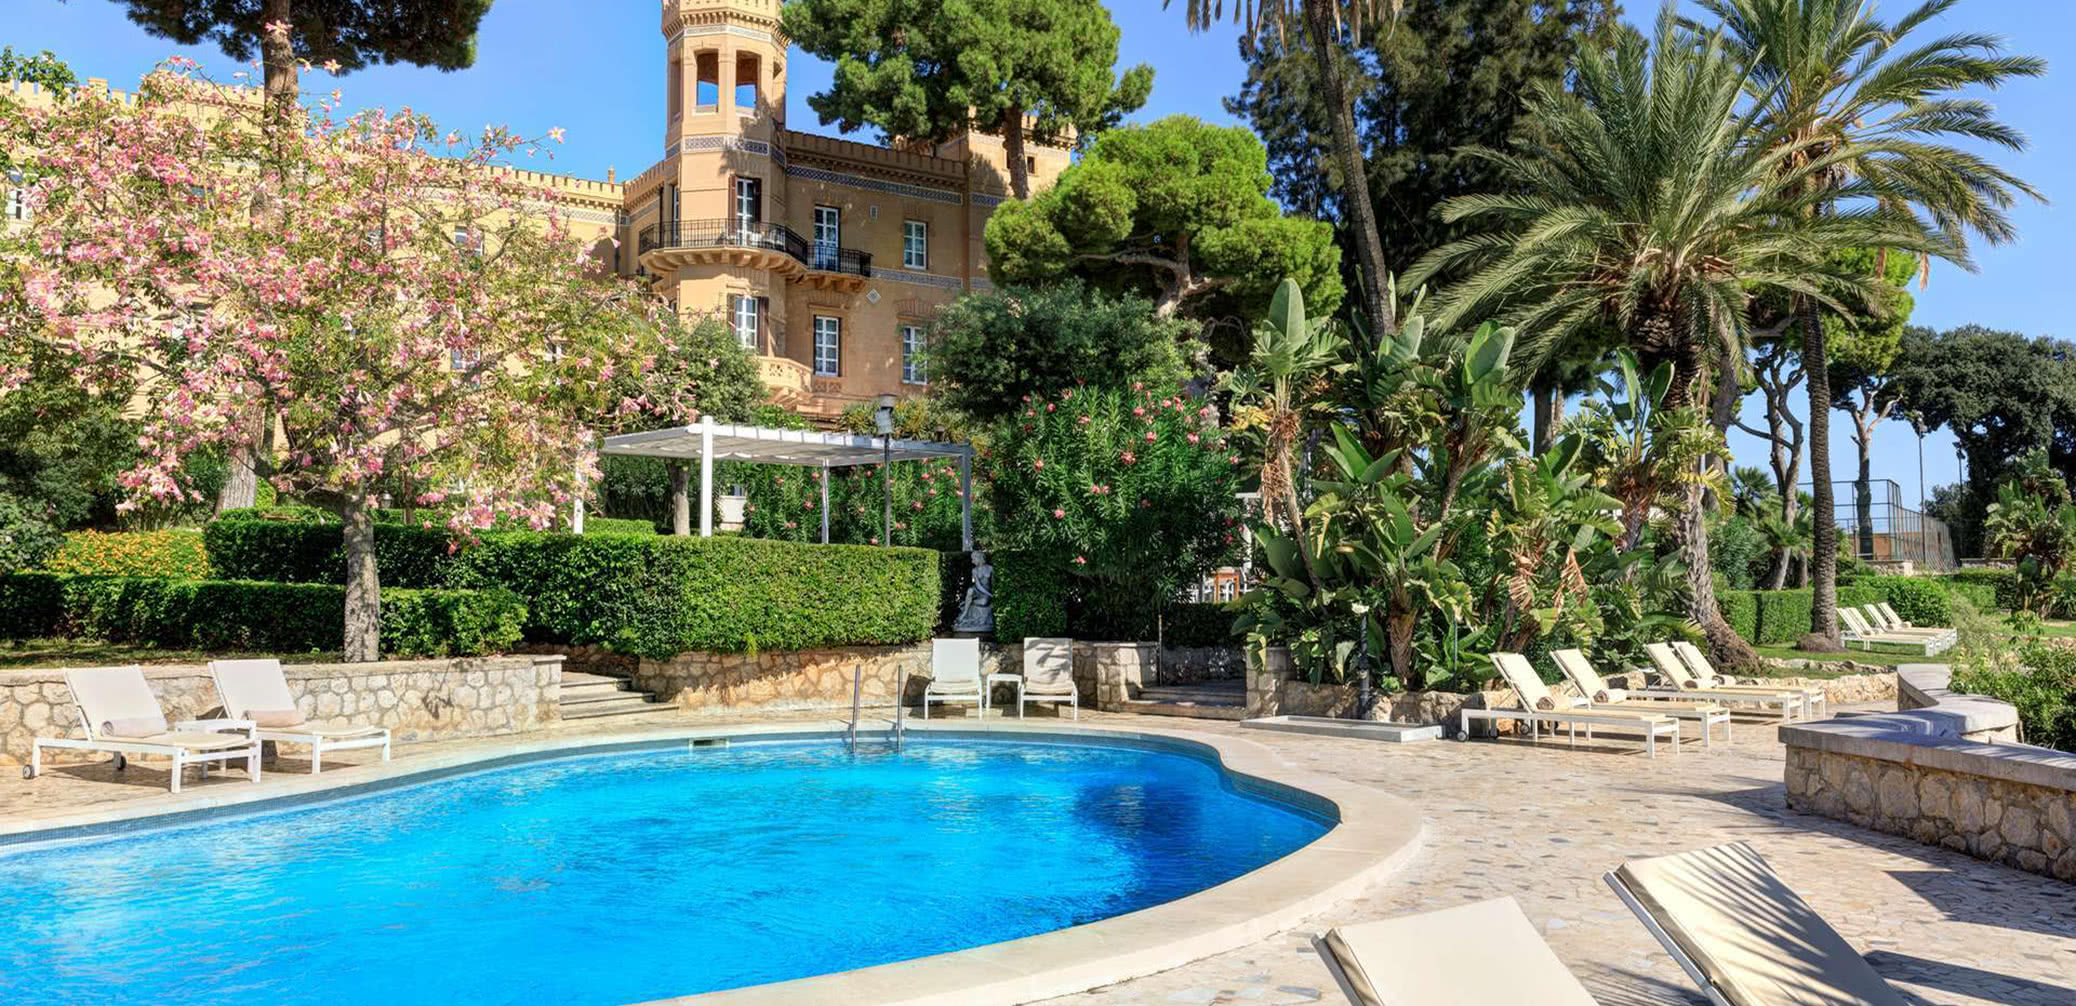 Review: Villa Igiea, a Rocco Forte Hotel, Palermo